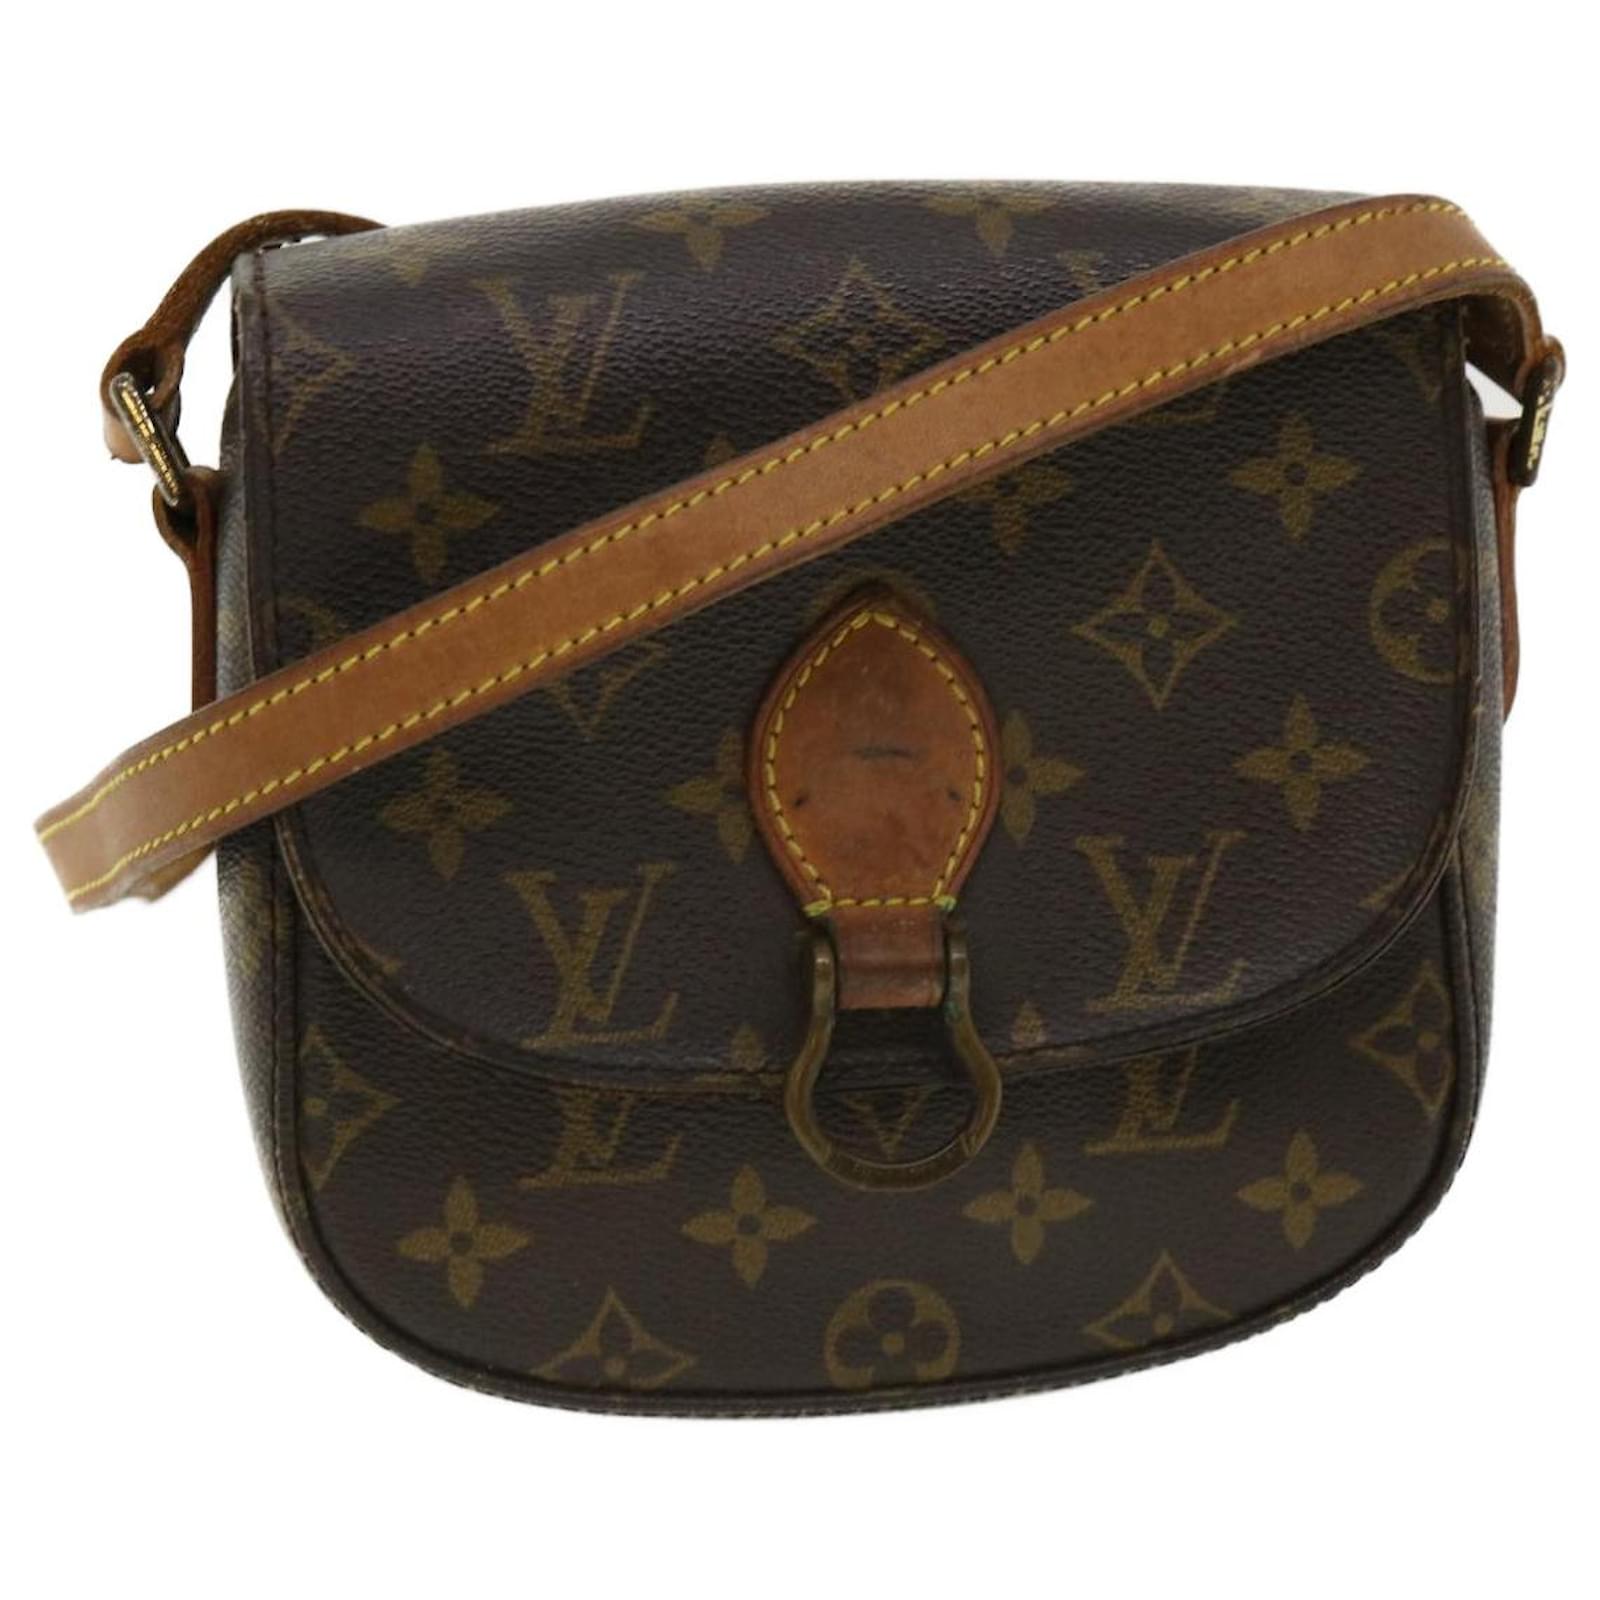 Louis Vuitton Saint Cloud Pm crossbody bag